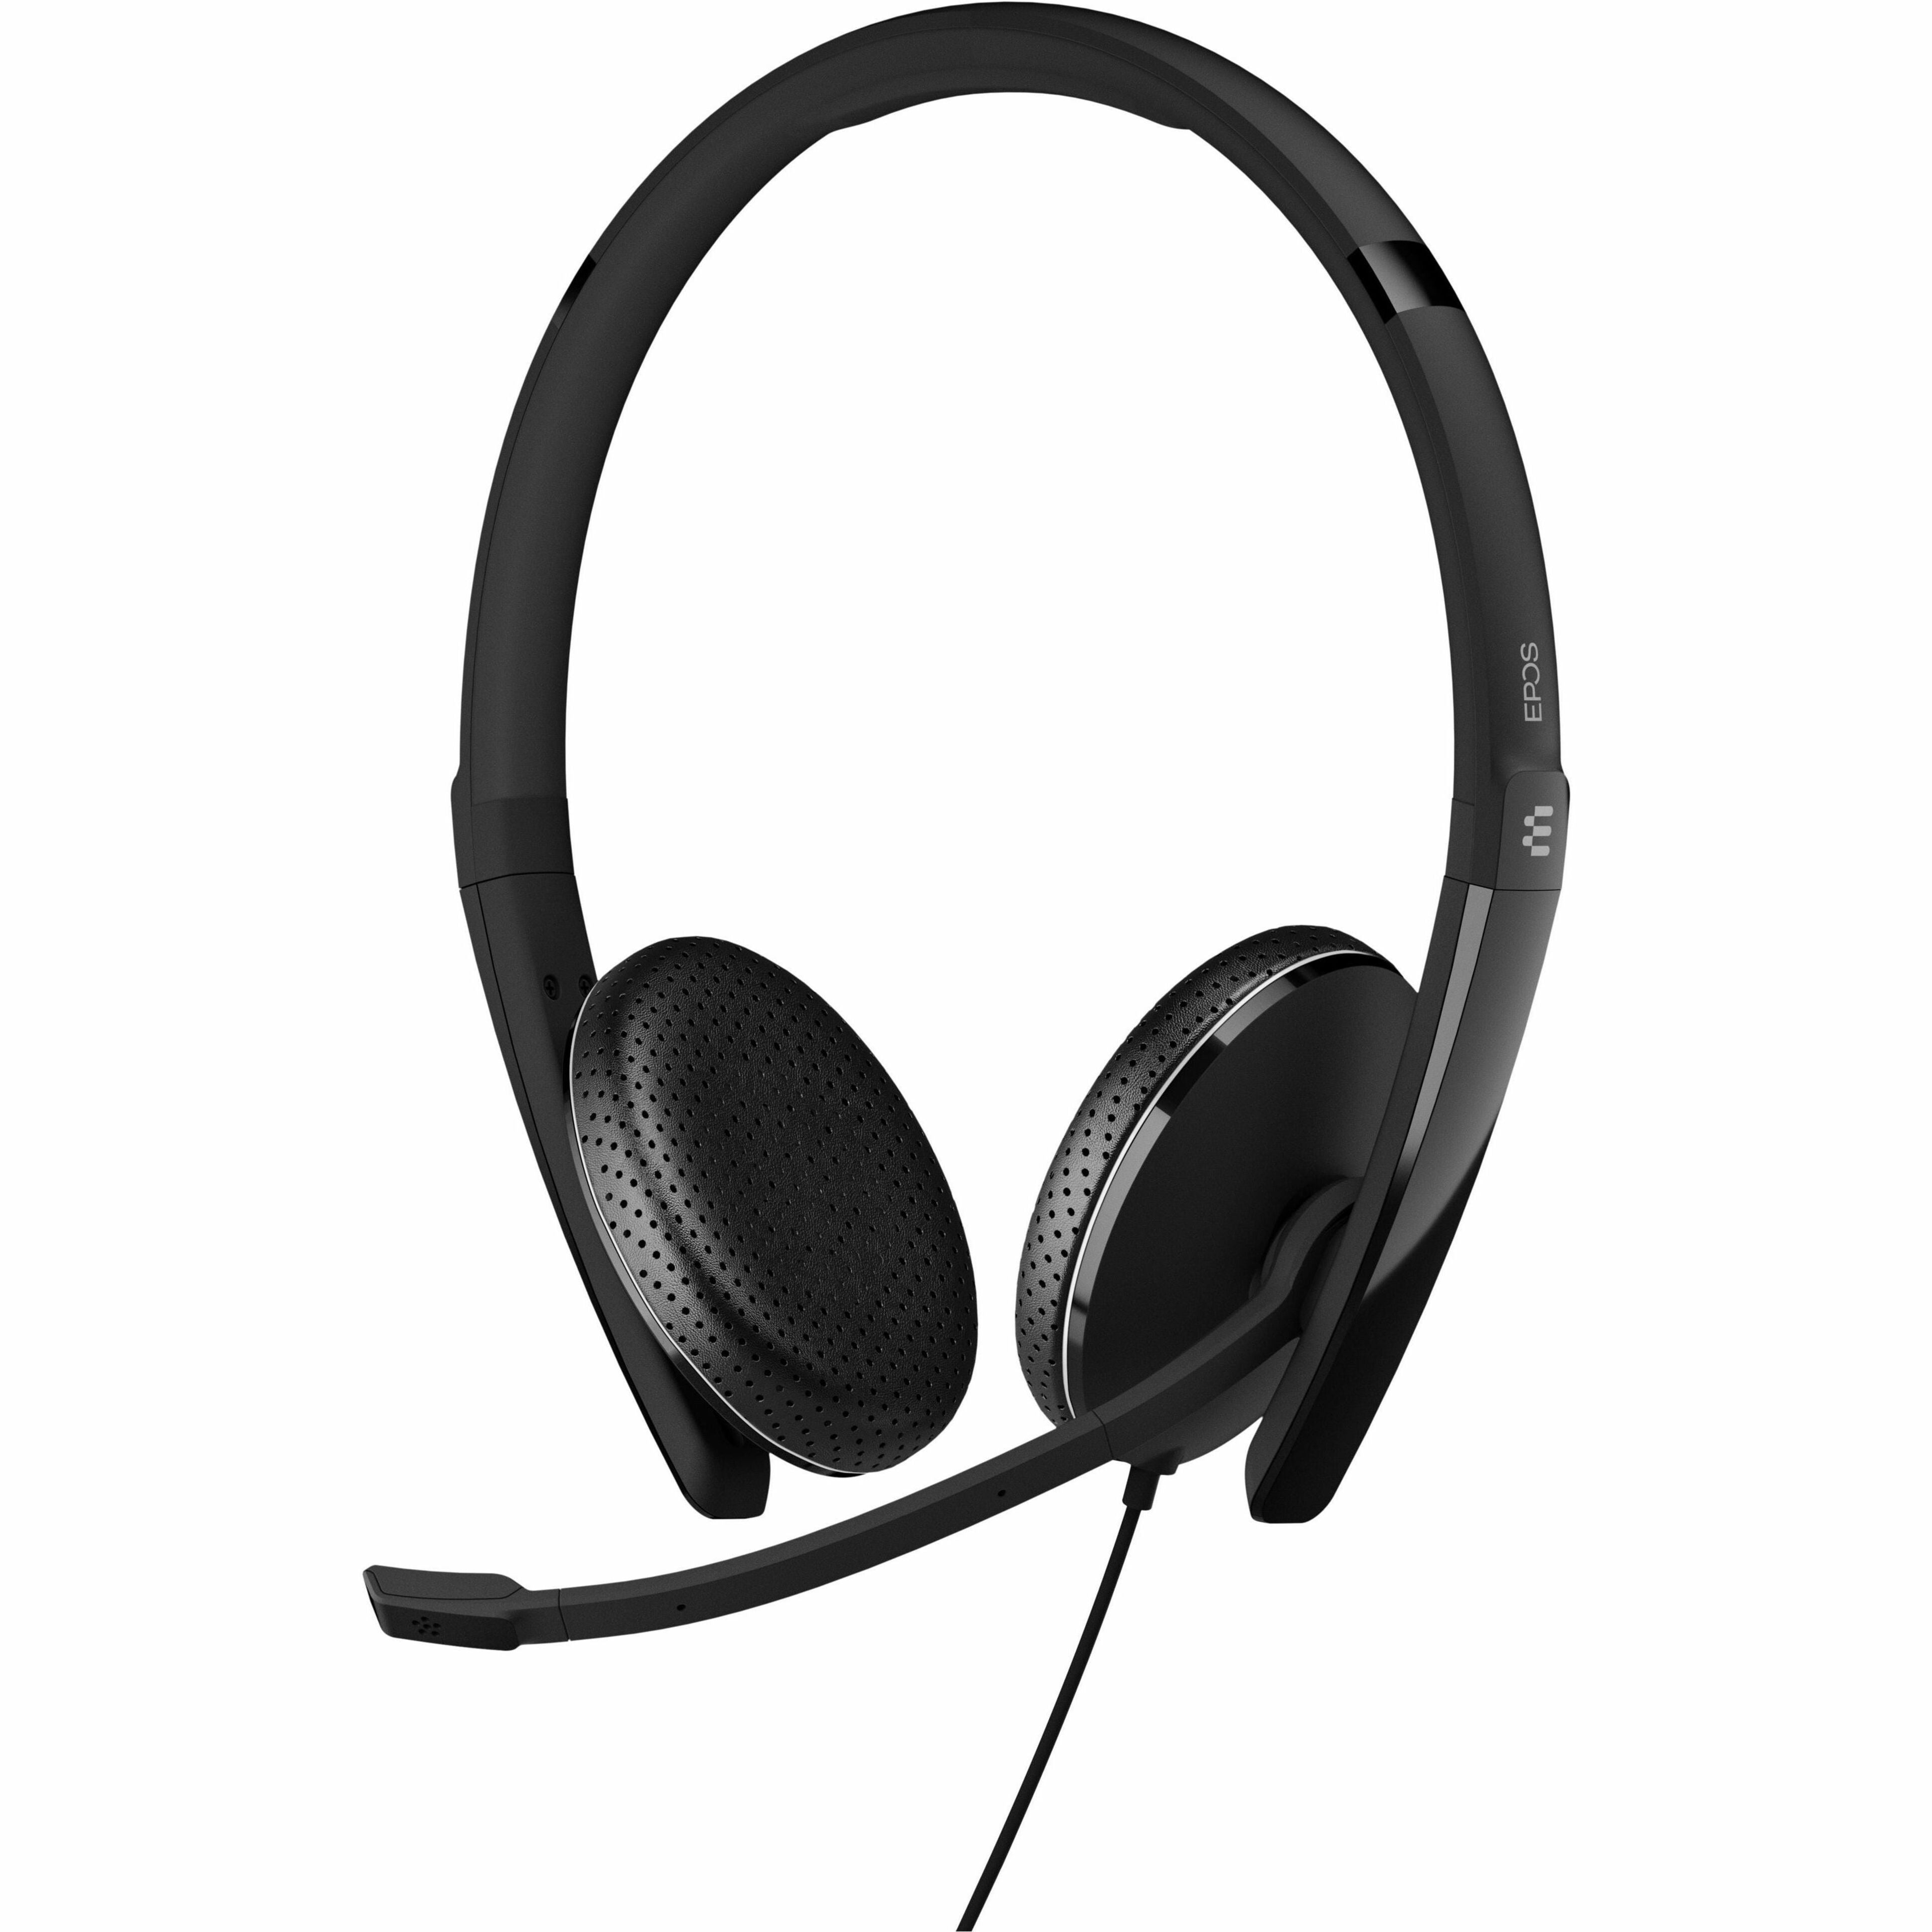 EPOS | SENNHEISER 1000920 ADAPT 165 USB-C II Headset Fones de ouvido binaurais com garantia de 2 anos microfone integrado compatibilidade com dispositivos móveis.